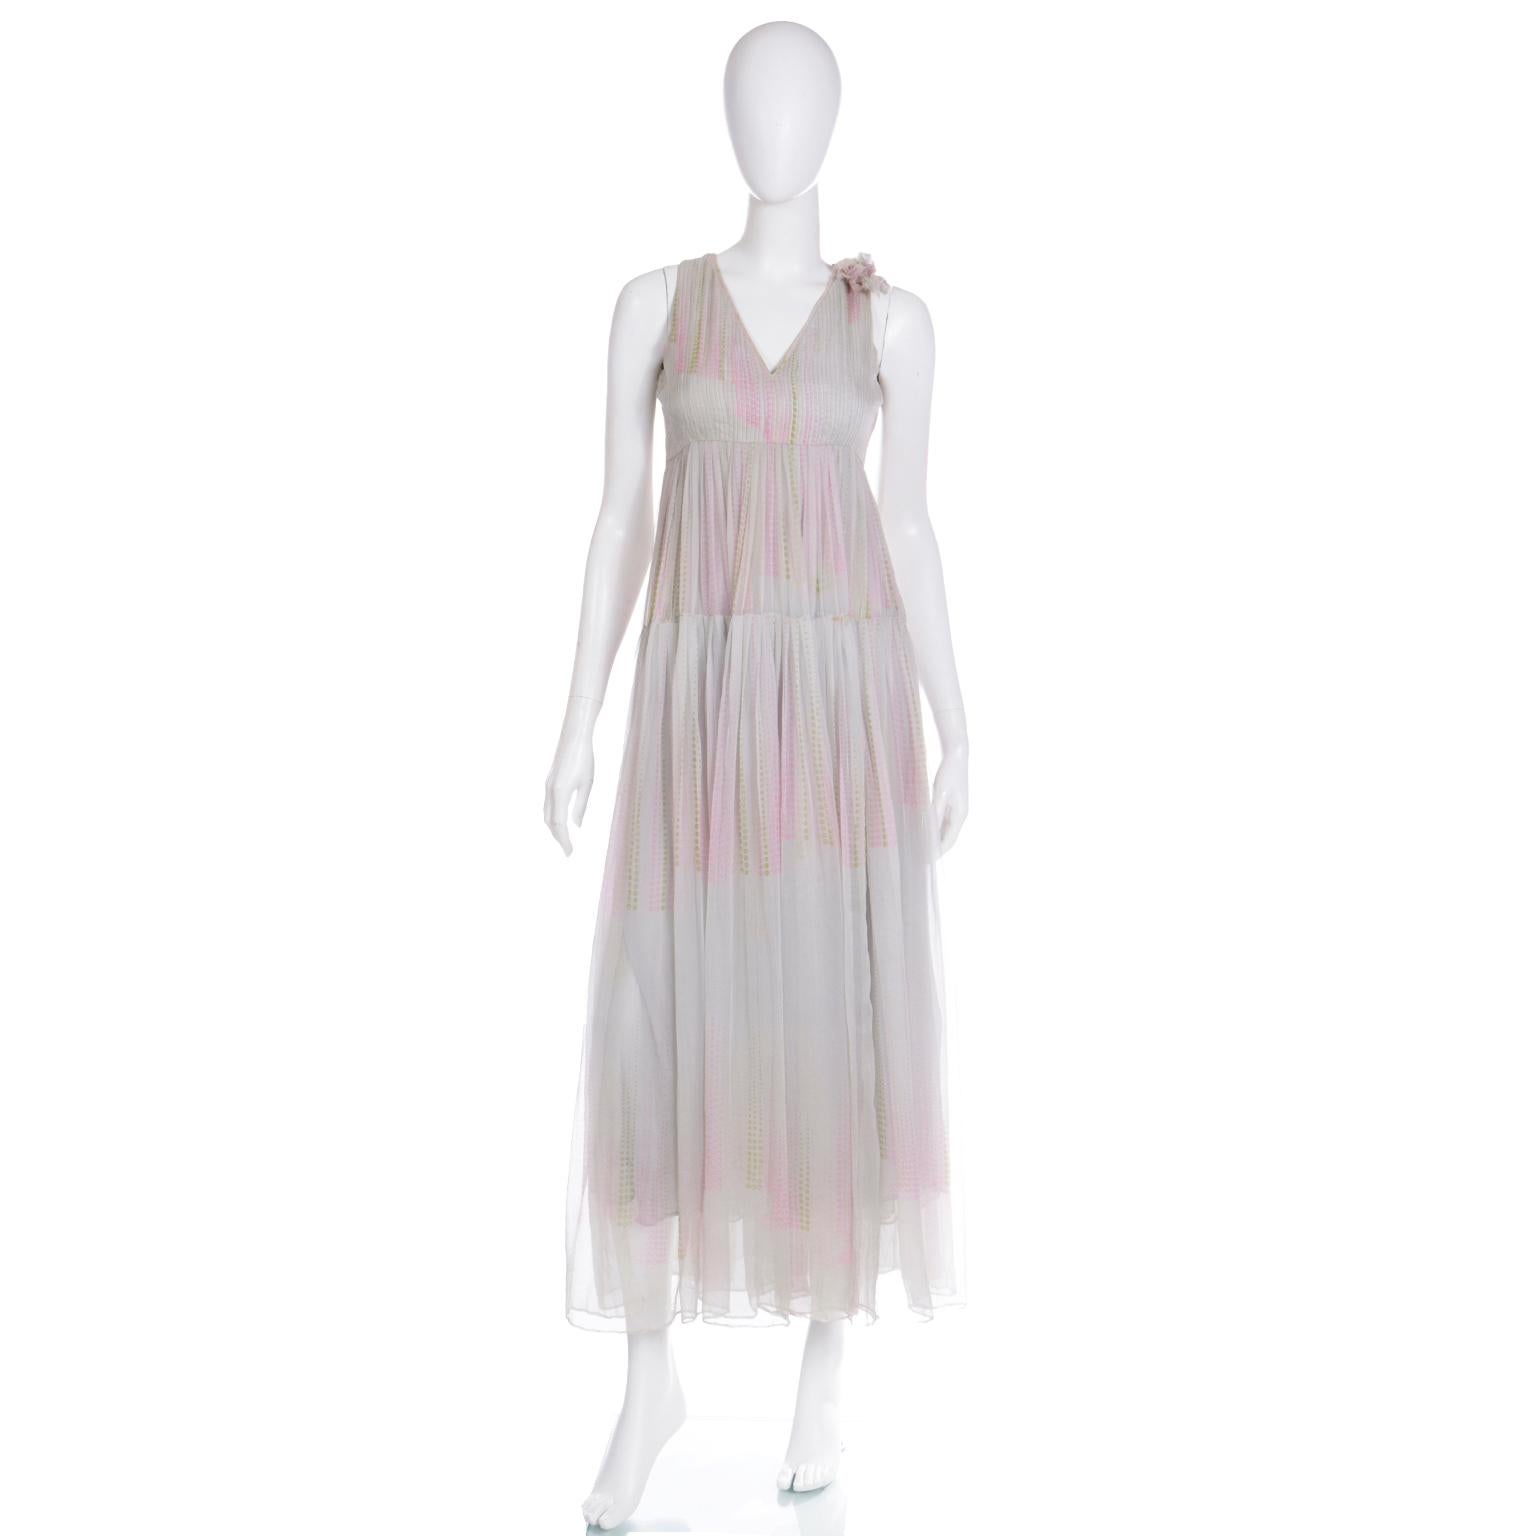 Cette incroyable robe en mousseline de soie André Laug du début des années 1970 est en mousseline de soie gris pâle plissée, à plusieurs couches et à étages, avec des points abstraits roses et verts. Le corsage a un buste empire et une fleur en soie